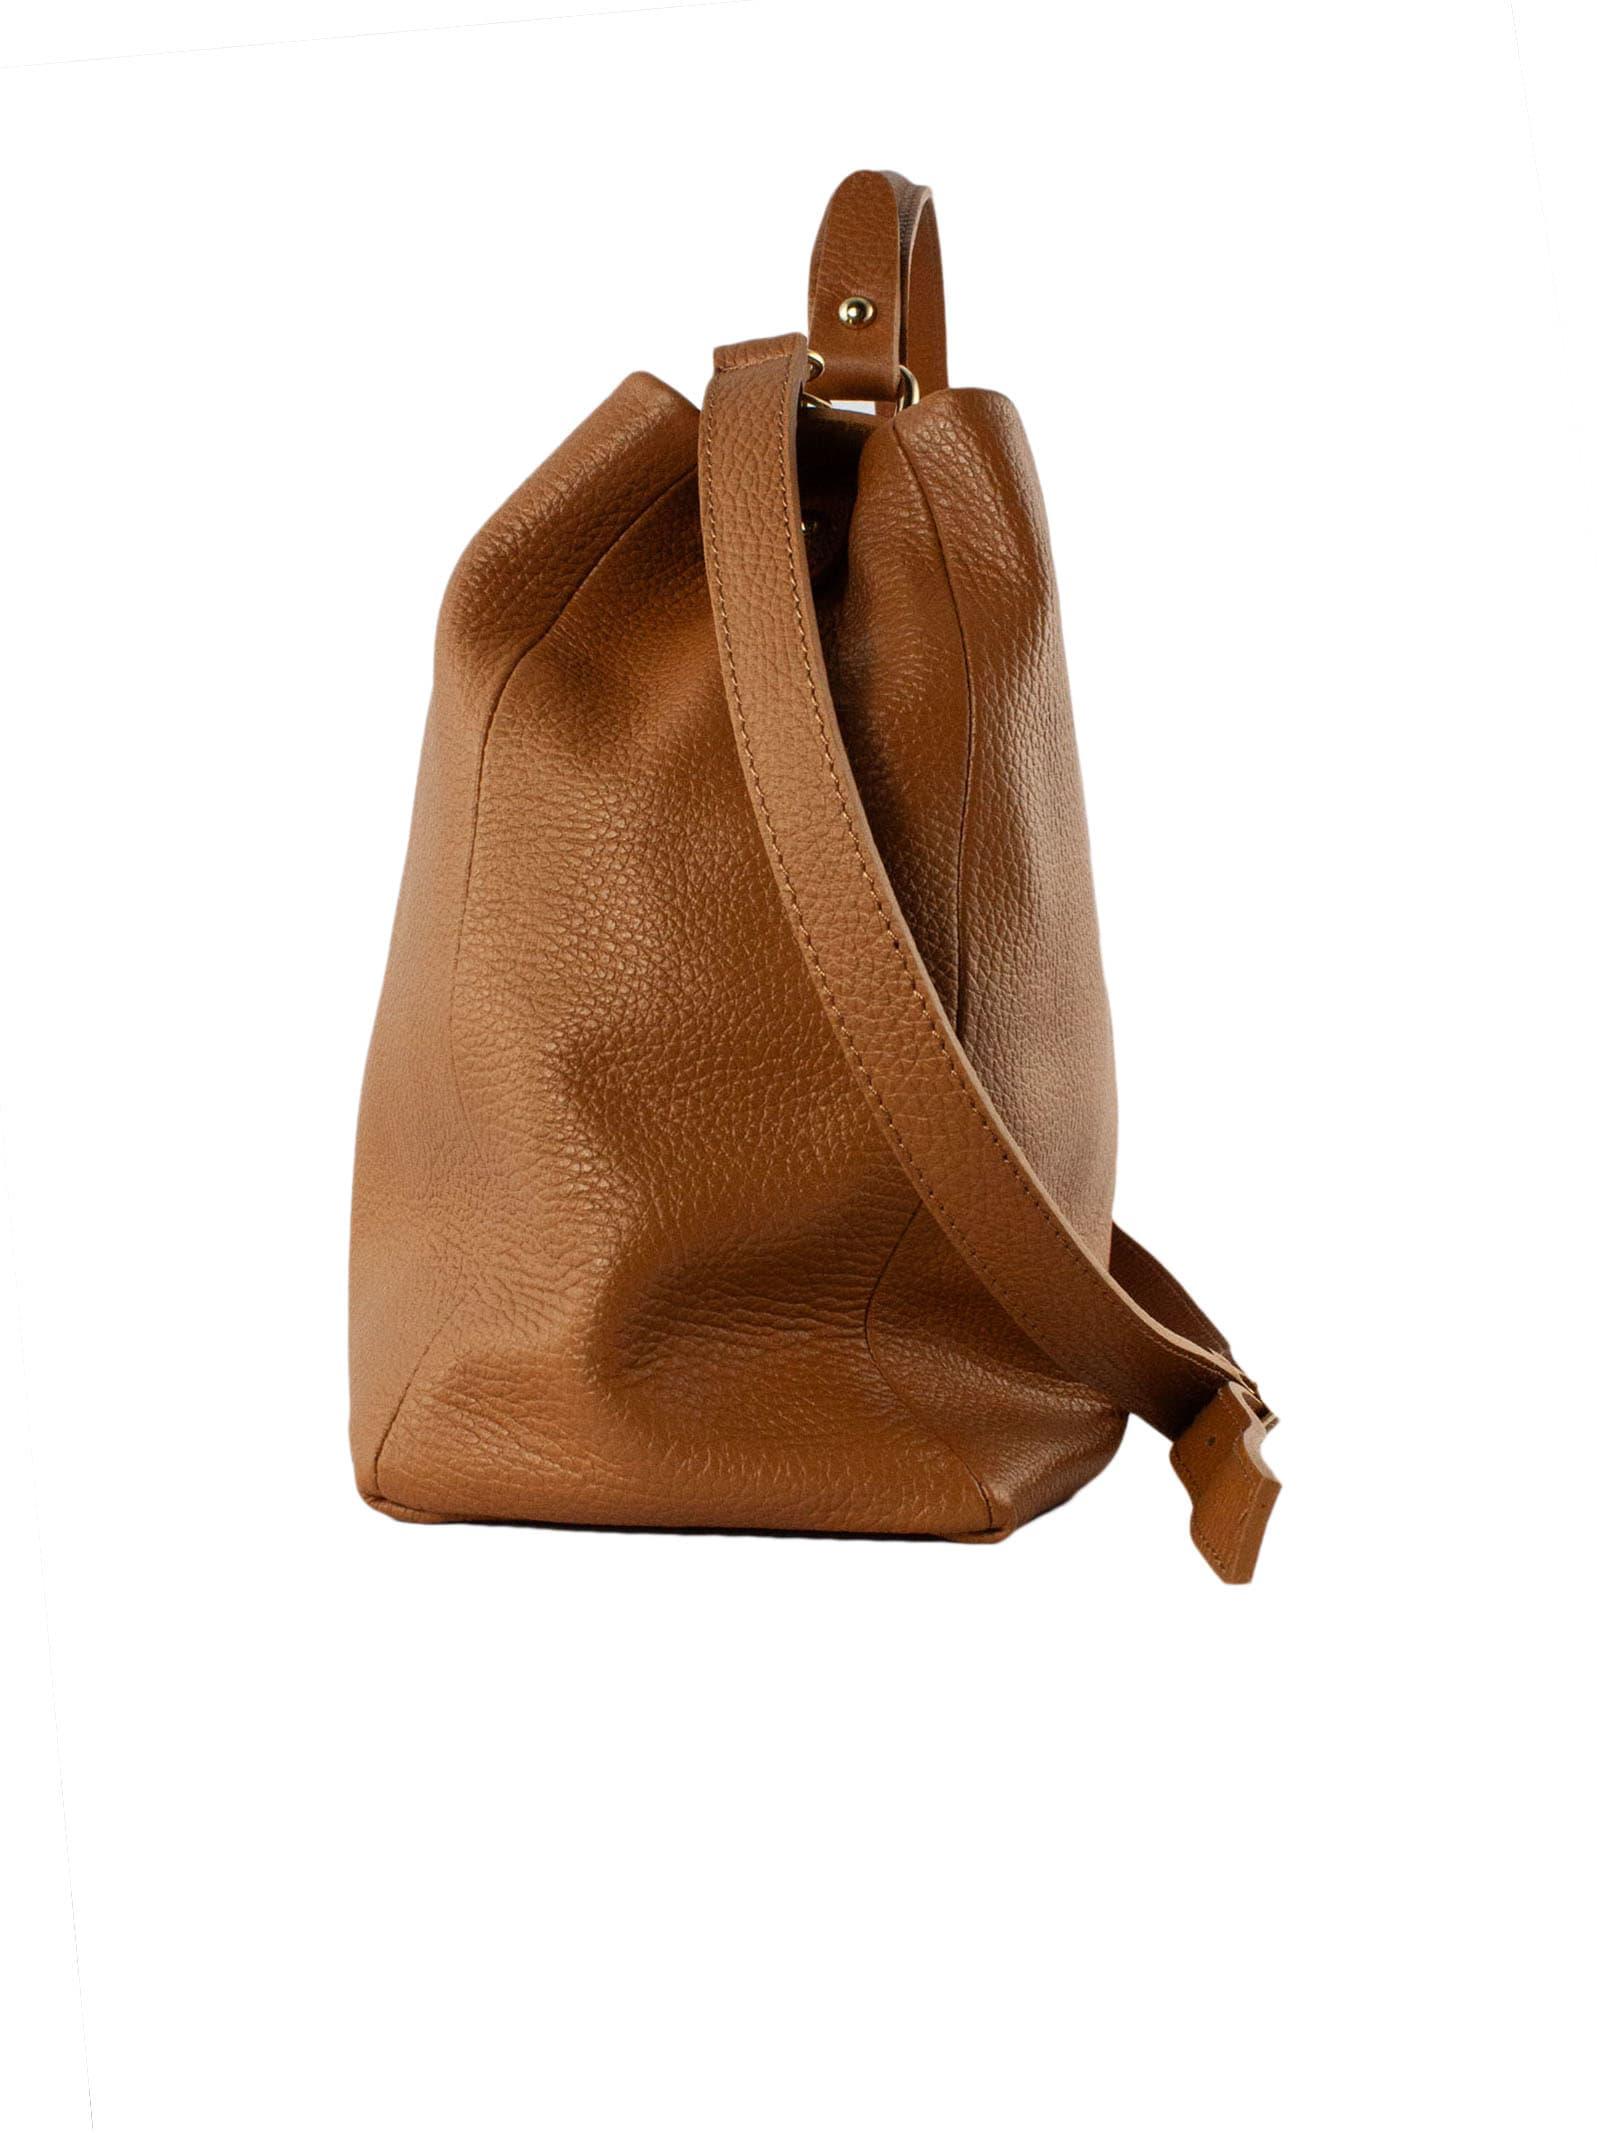 Shop Debenhams Mantaray Women's Bags up to 70% Off | DealDoodle